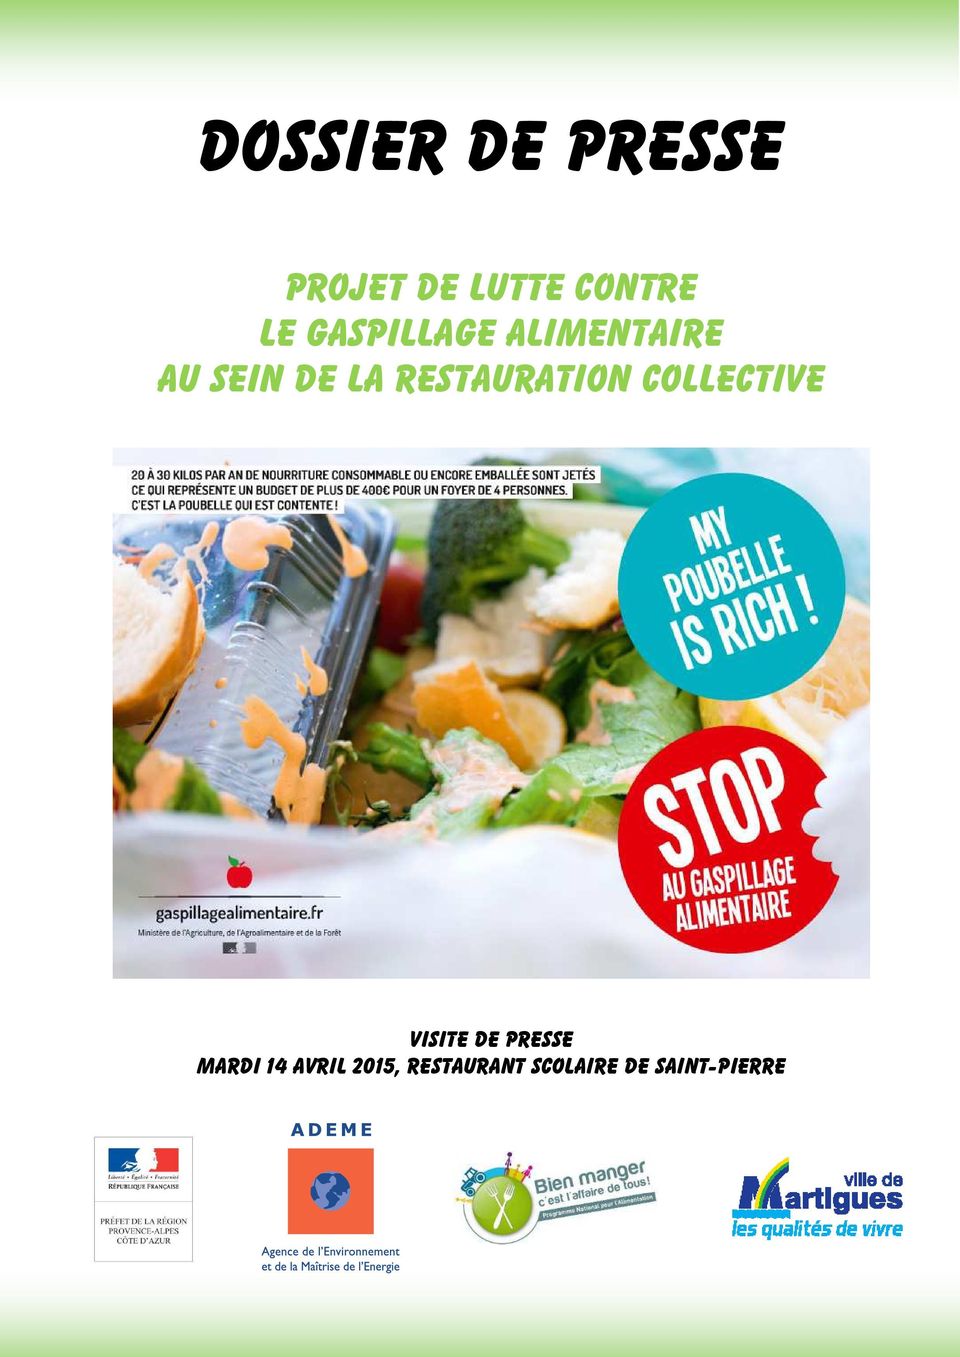 avril 2015, restaurant scolaire de Saint-Pierre Dossier de presse